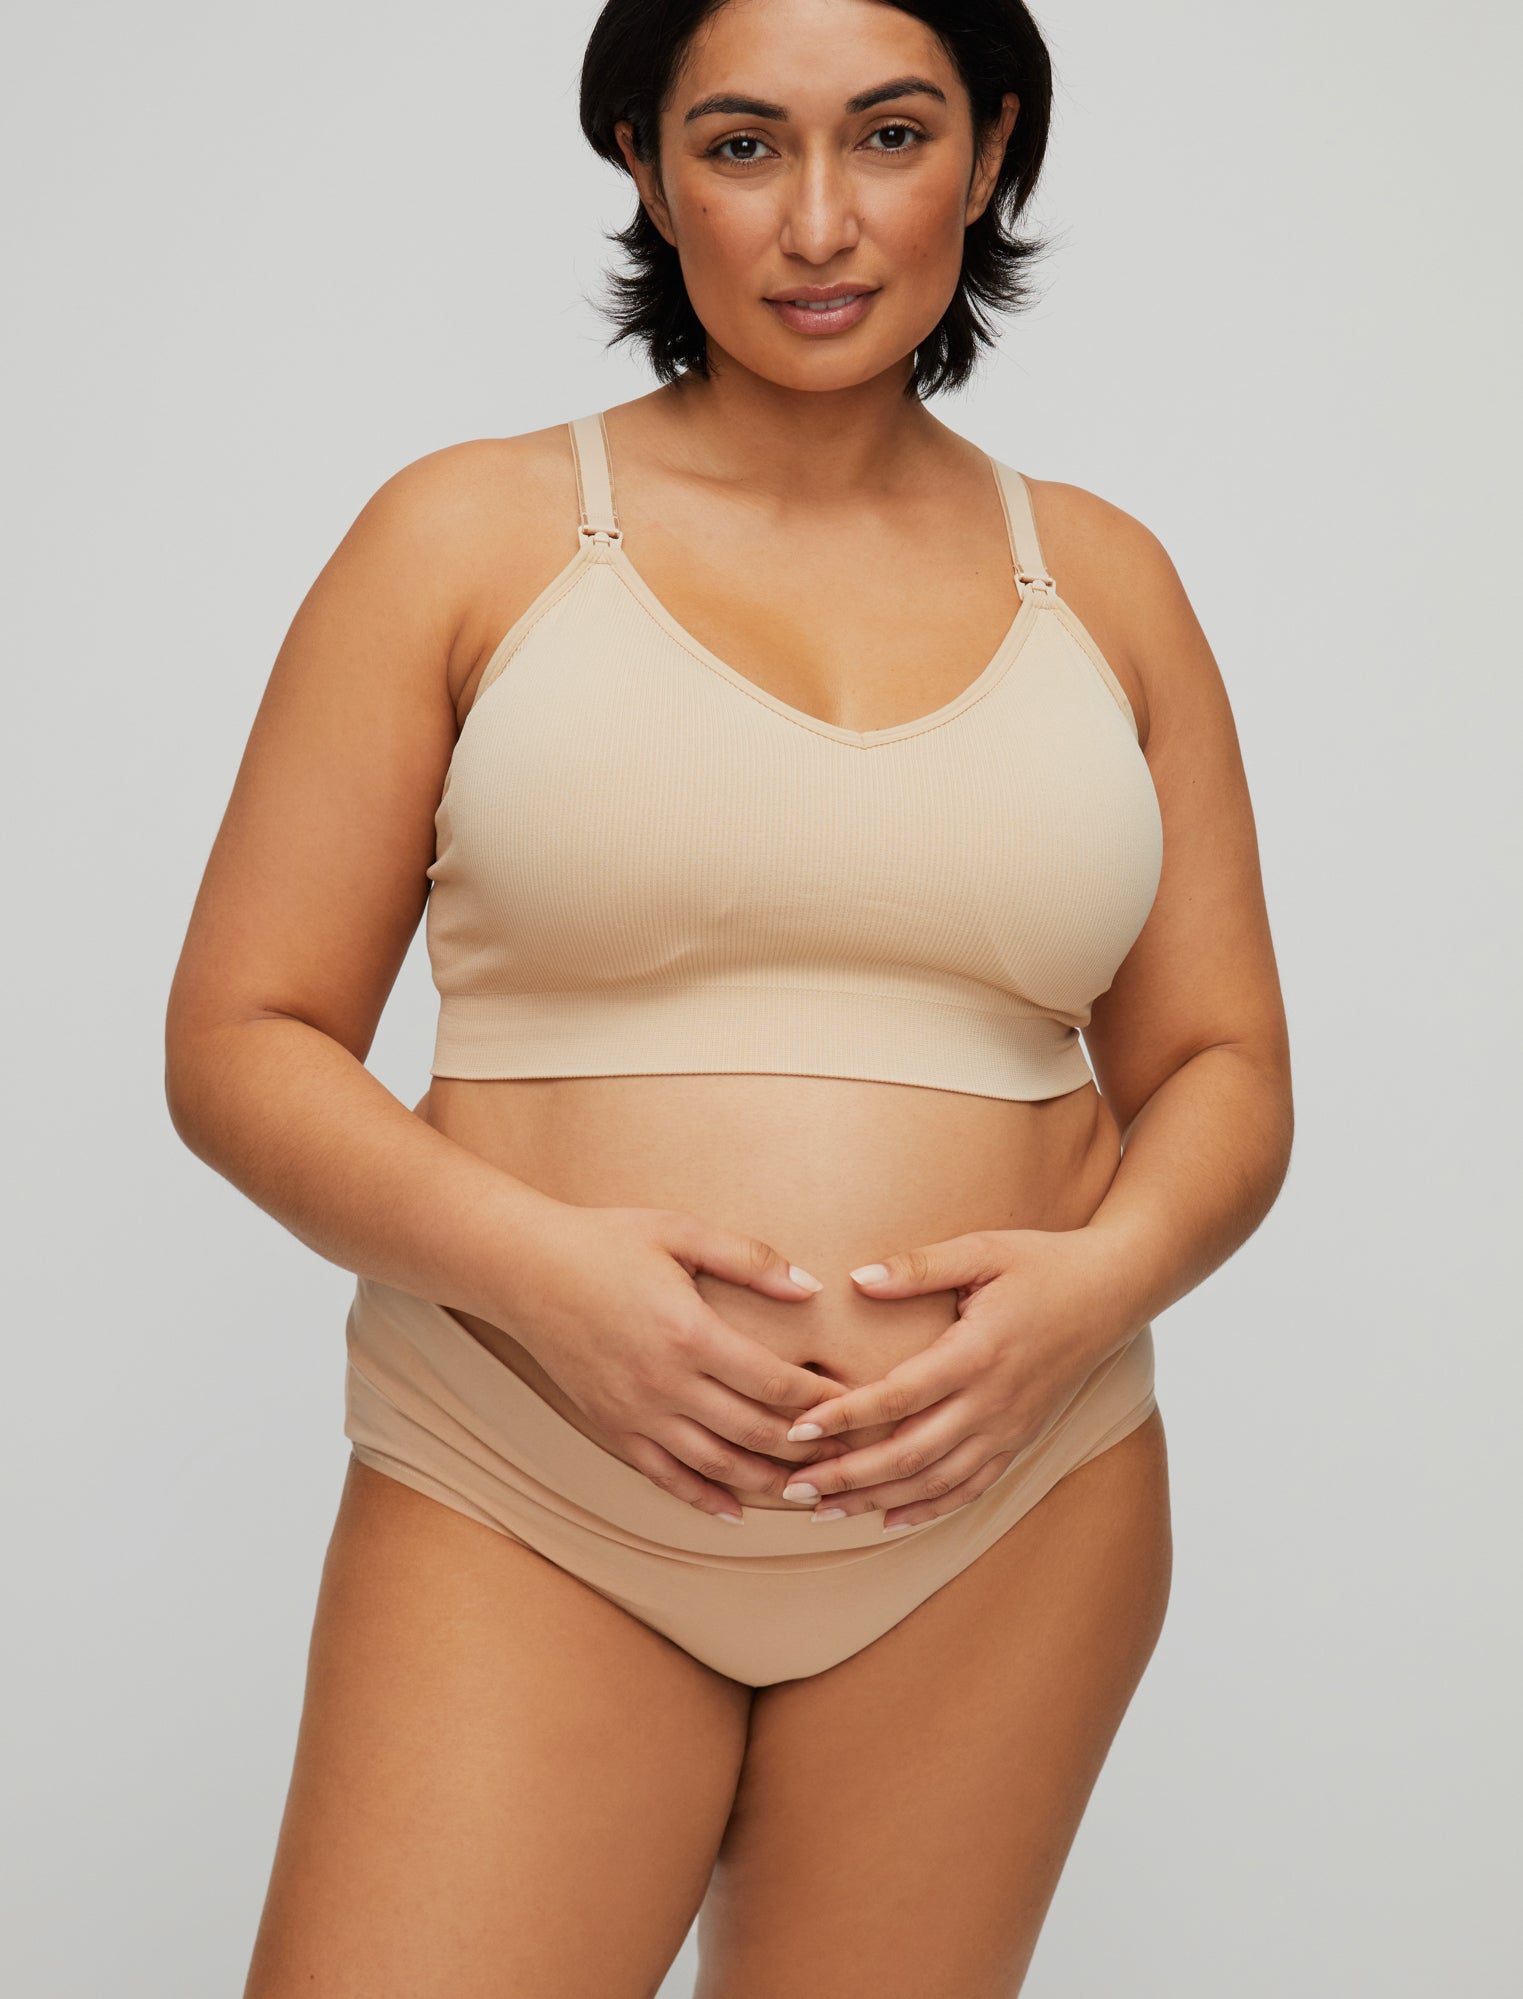 Womens Nursing Bras Clearance Plus Size Women Openable Feeding Nursing  Maternity Bra Pregnant Underwear 